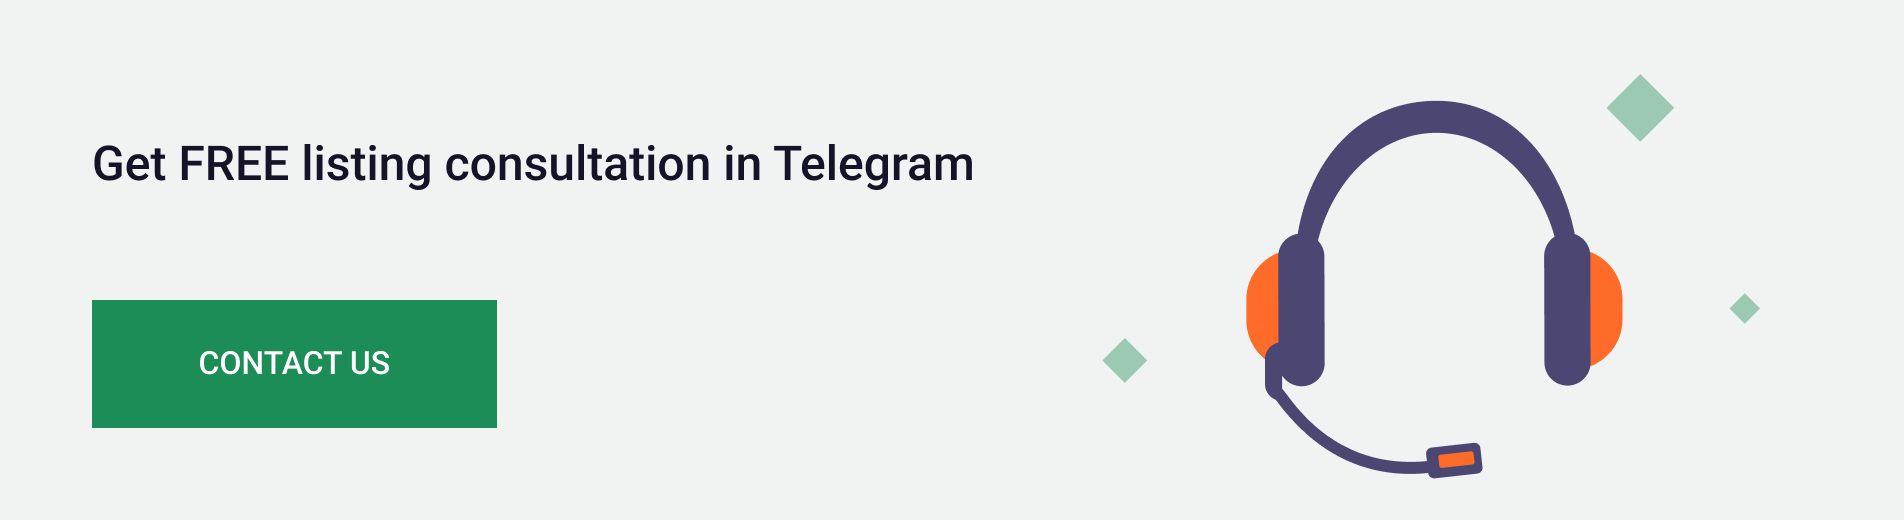 Get listing consultation in Telegram